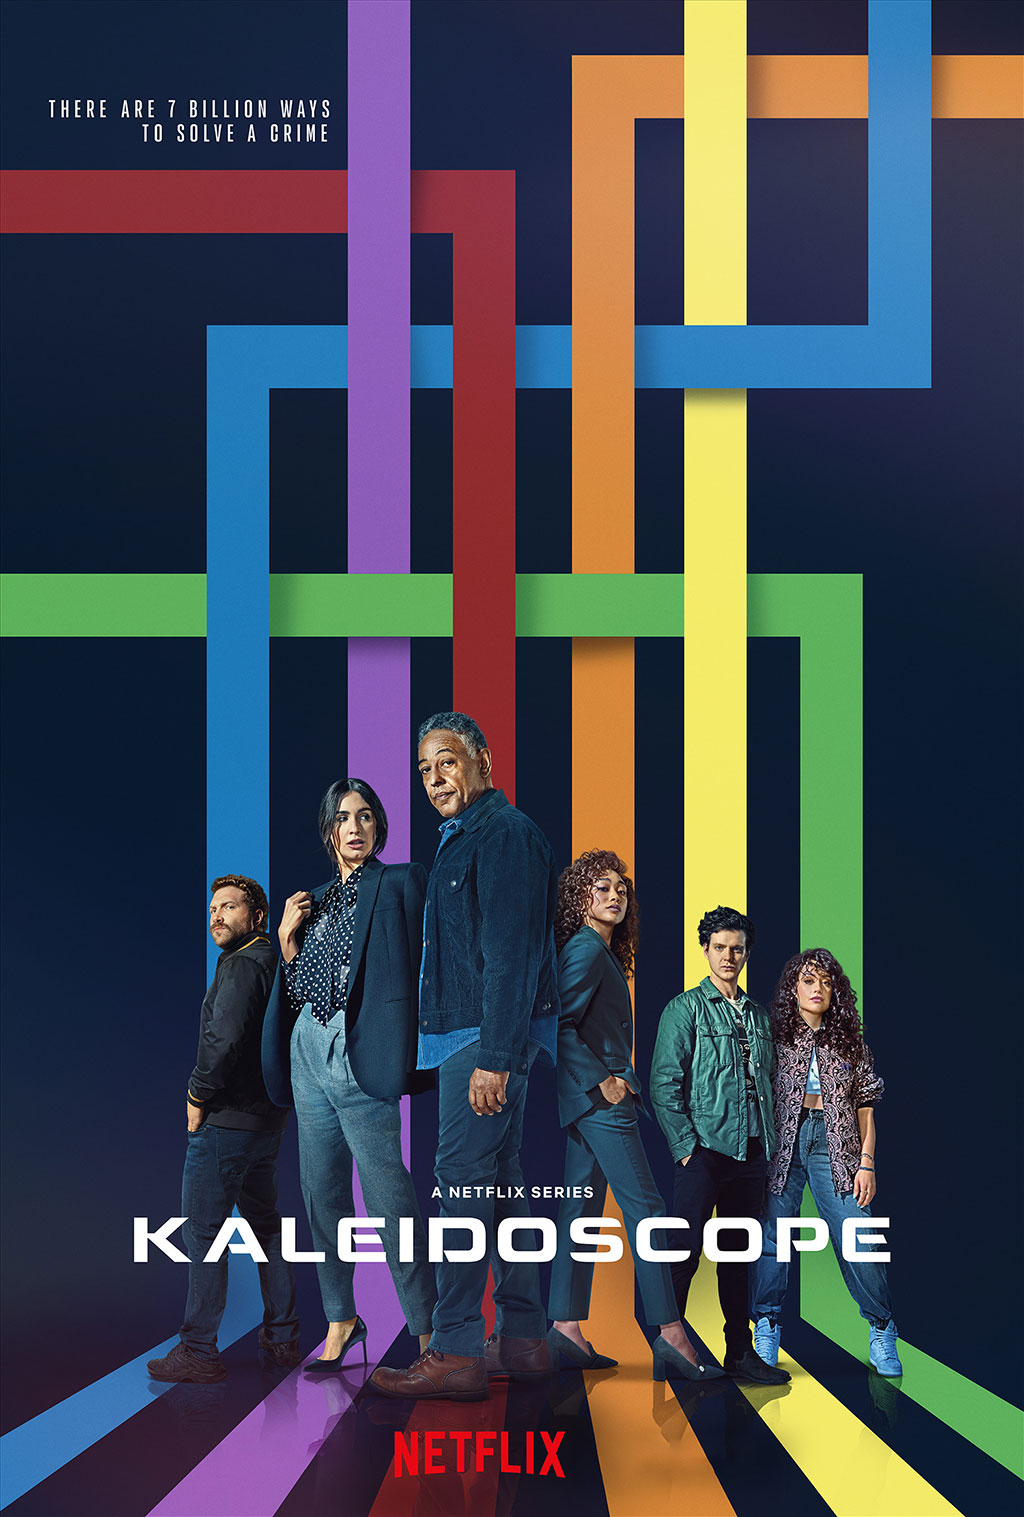 سریال کلایدسکوپ 2022 Kaleidoscope